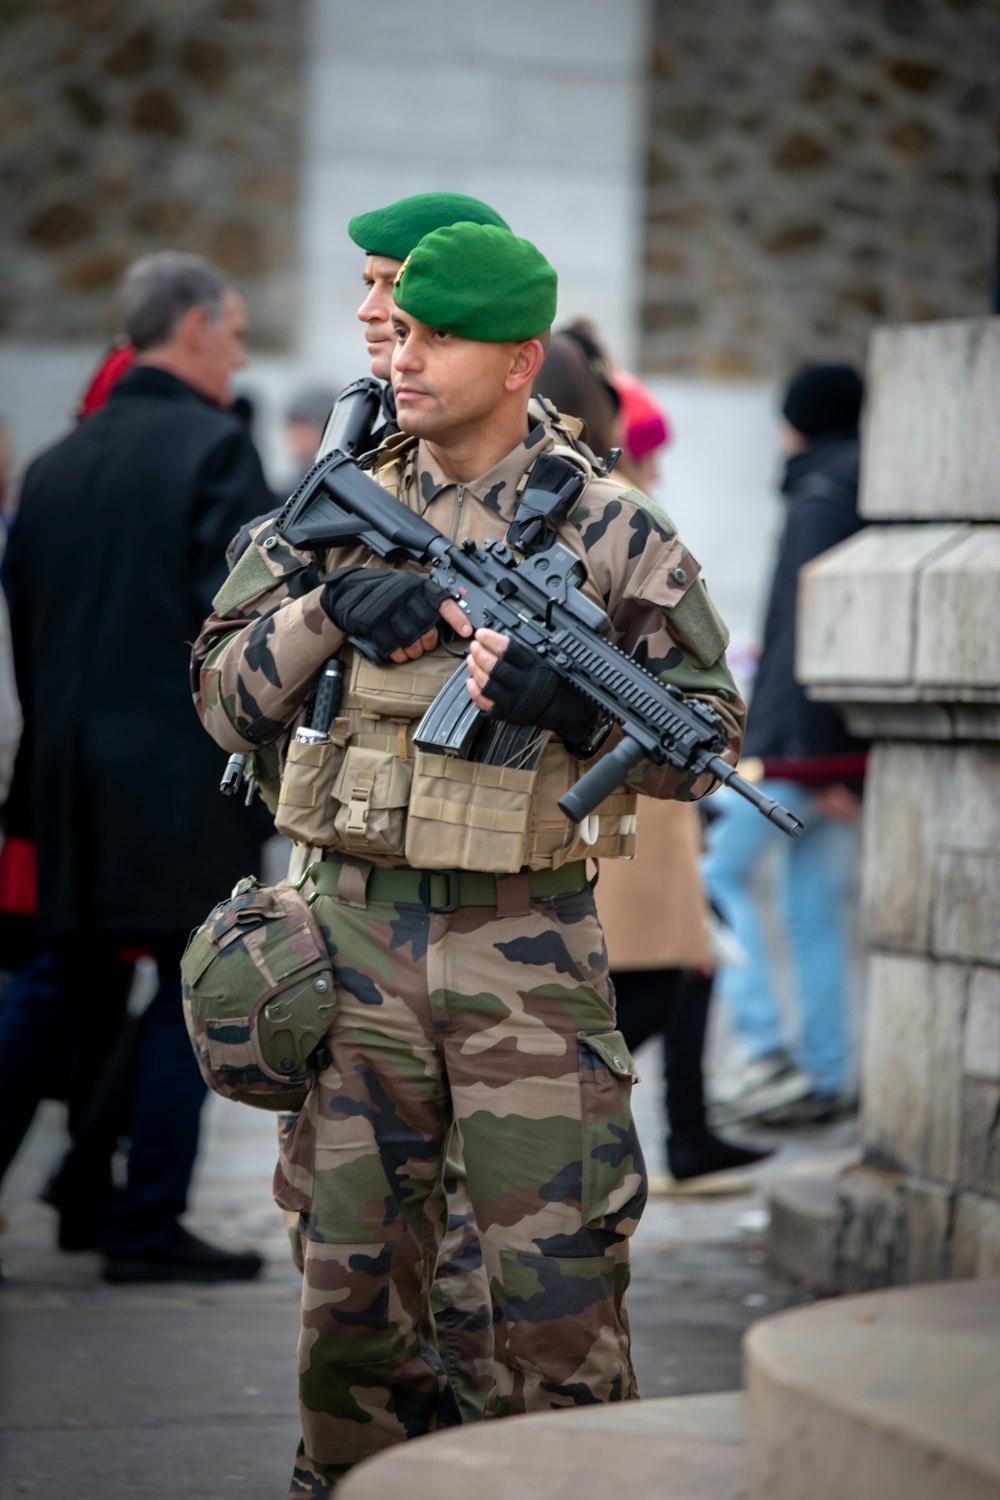 소총을 든 군인이 건물 앞에서 보초를 서고 있다